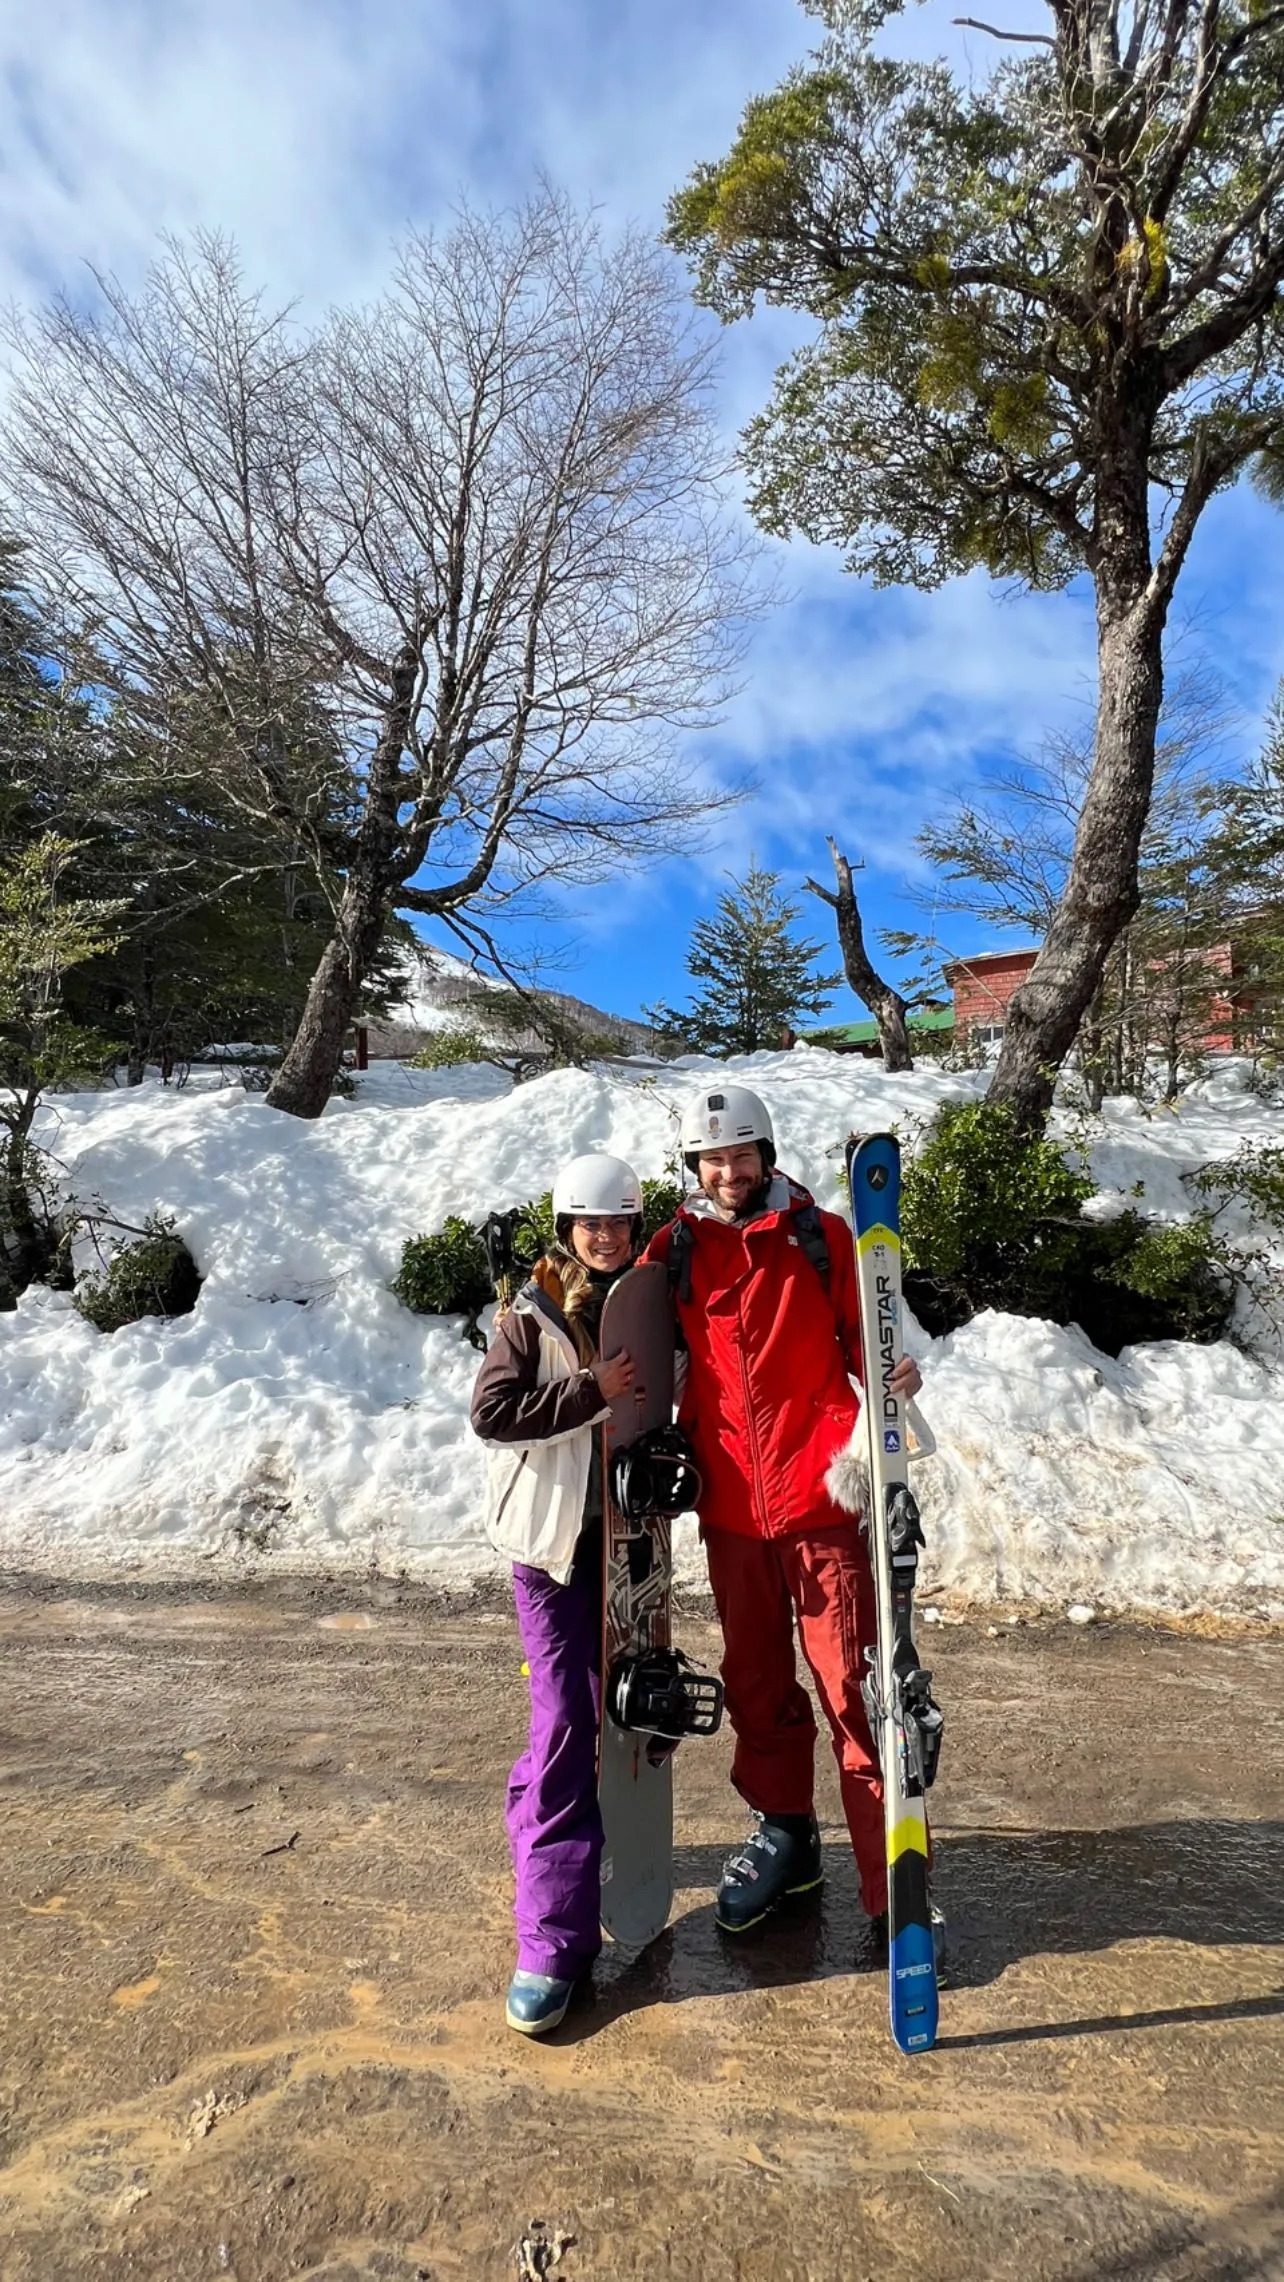 AFHS: María Grazia Gamarra y su familia disfrutan de la nieve en inolvidable viaje 